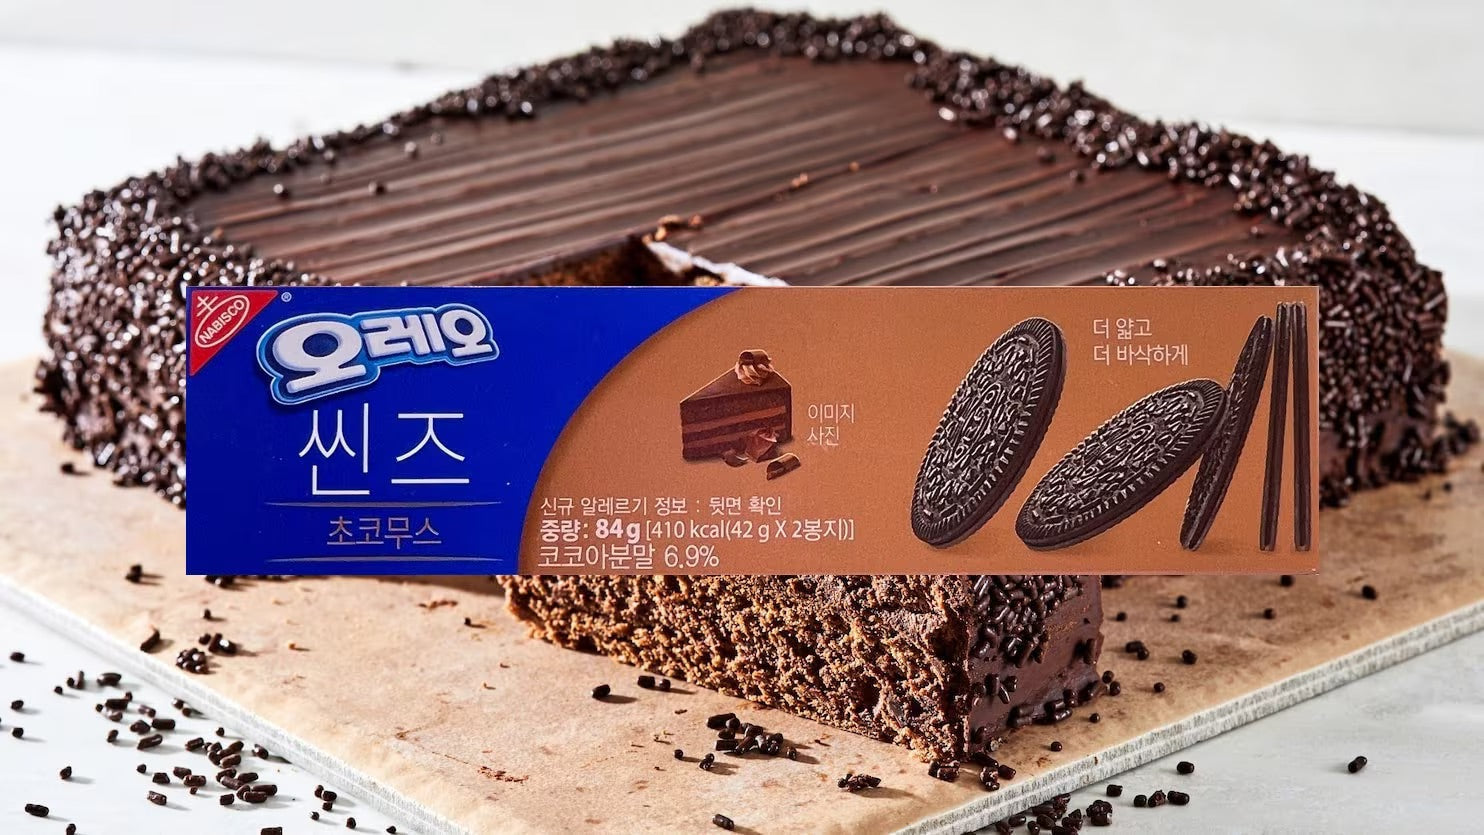 Korean Oreo Thins - Chocolate Mousse